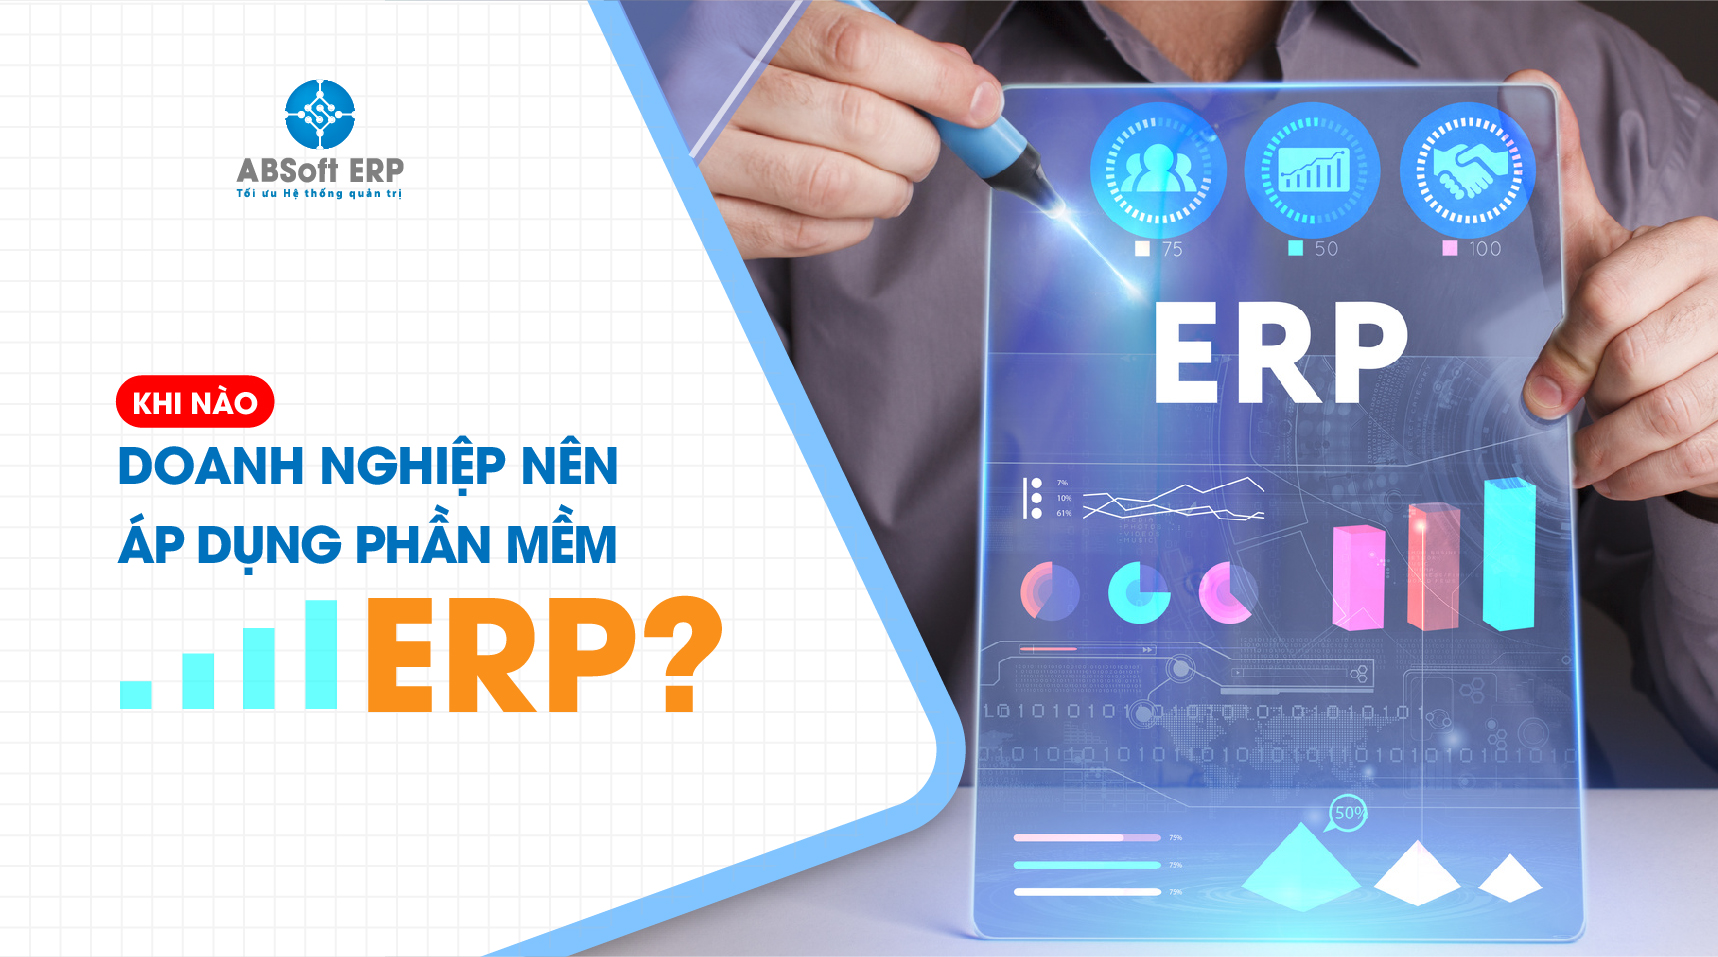 Khi nào doanh nghiệp nên áp dụng phần mềm ERP